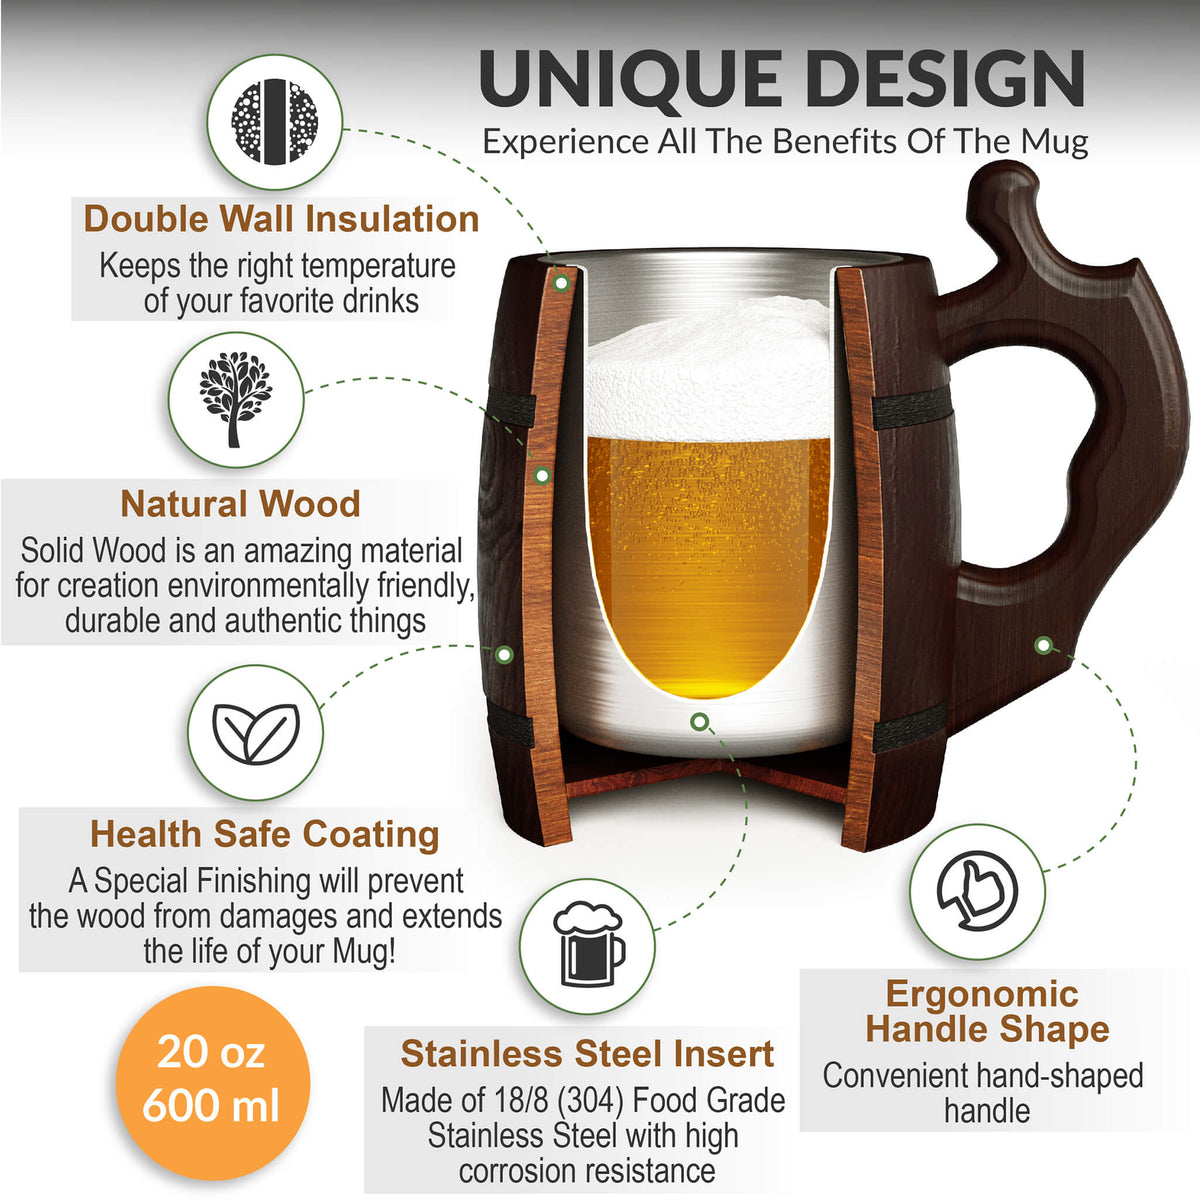 Oak Barrel Beer Mug - Double Insulated (20oz/568ml)